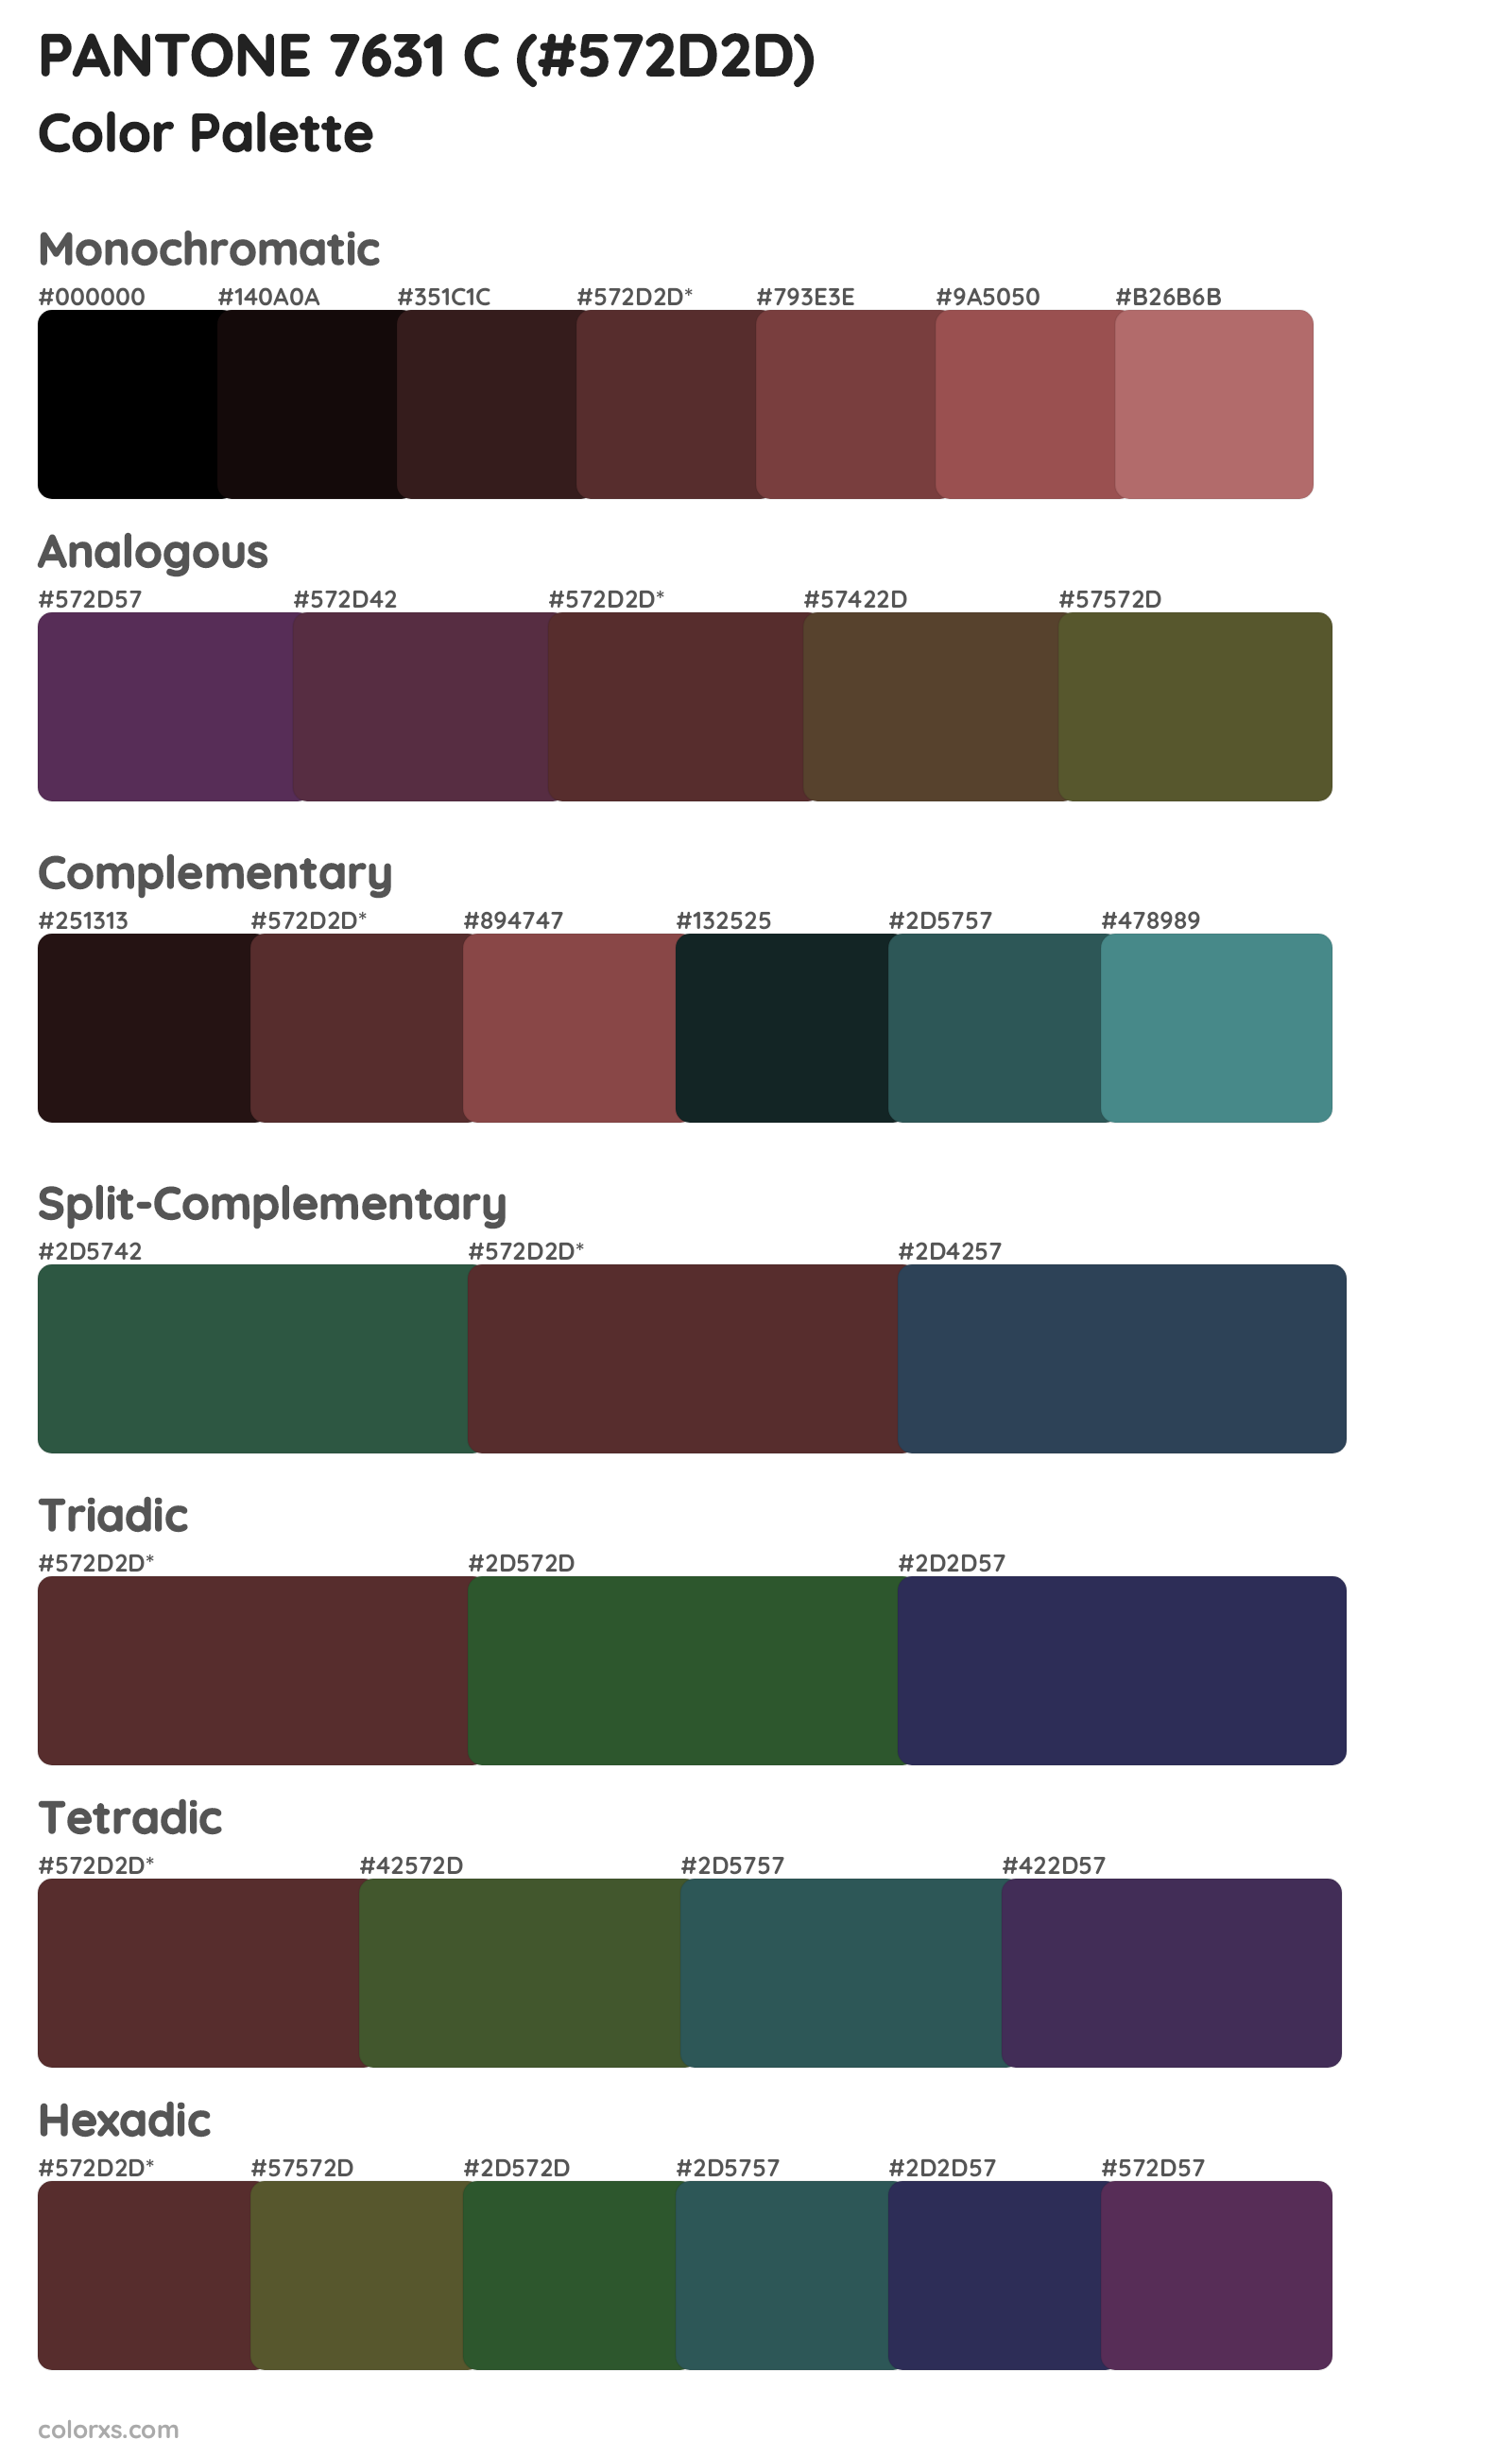 PANTONE 7631 C Color Scheme Palettes